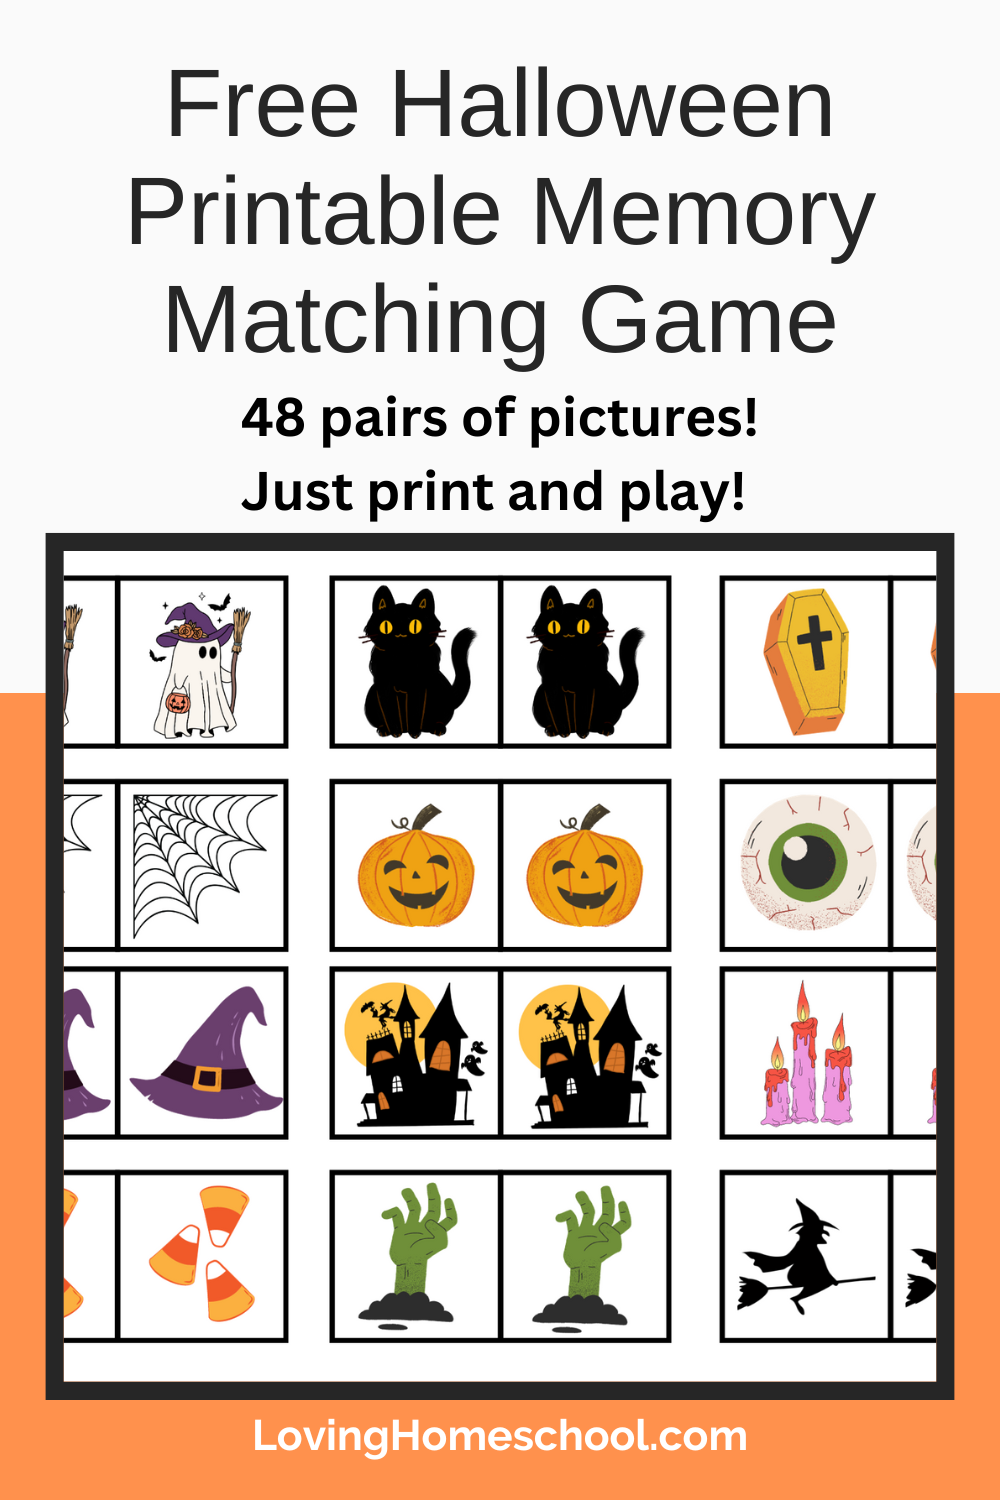 Free Printable Halloween Memory Matching Game Pinterest Pin